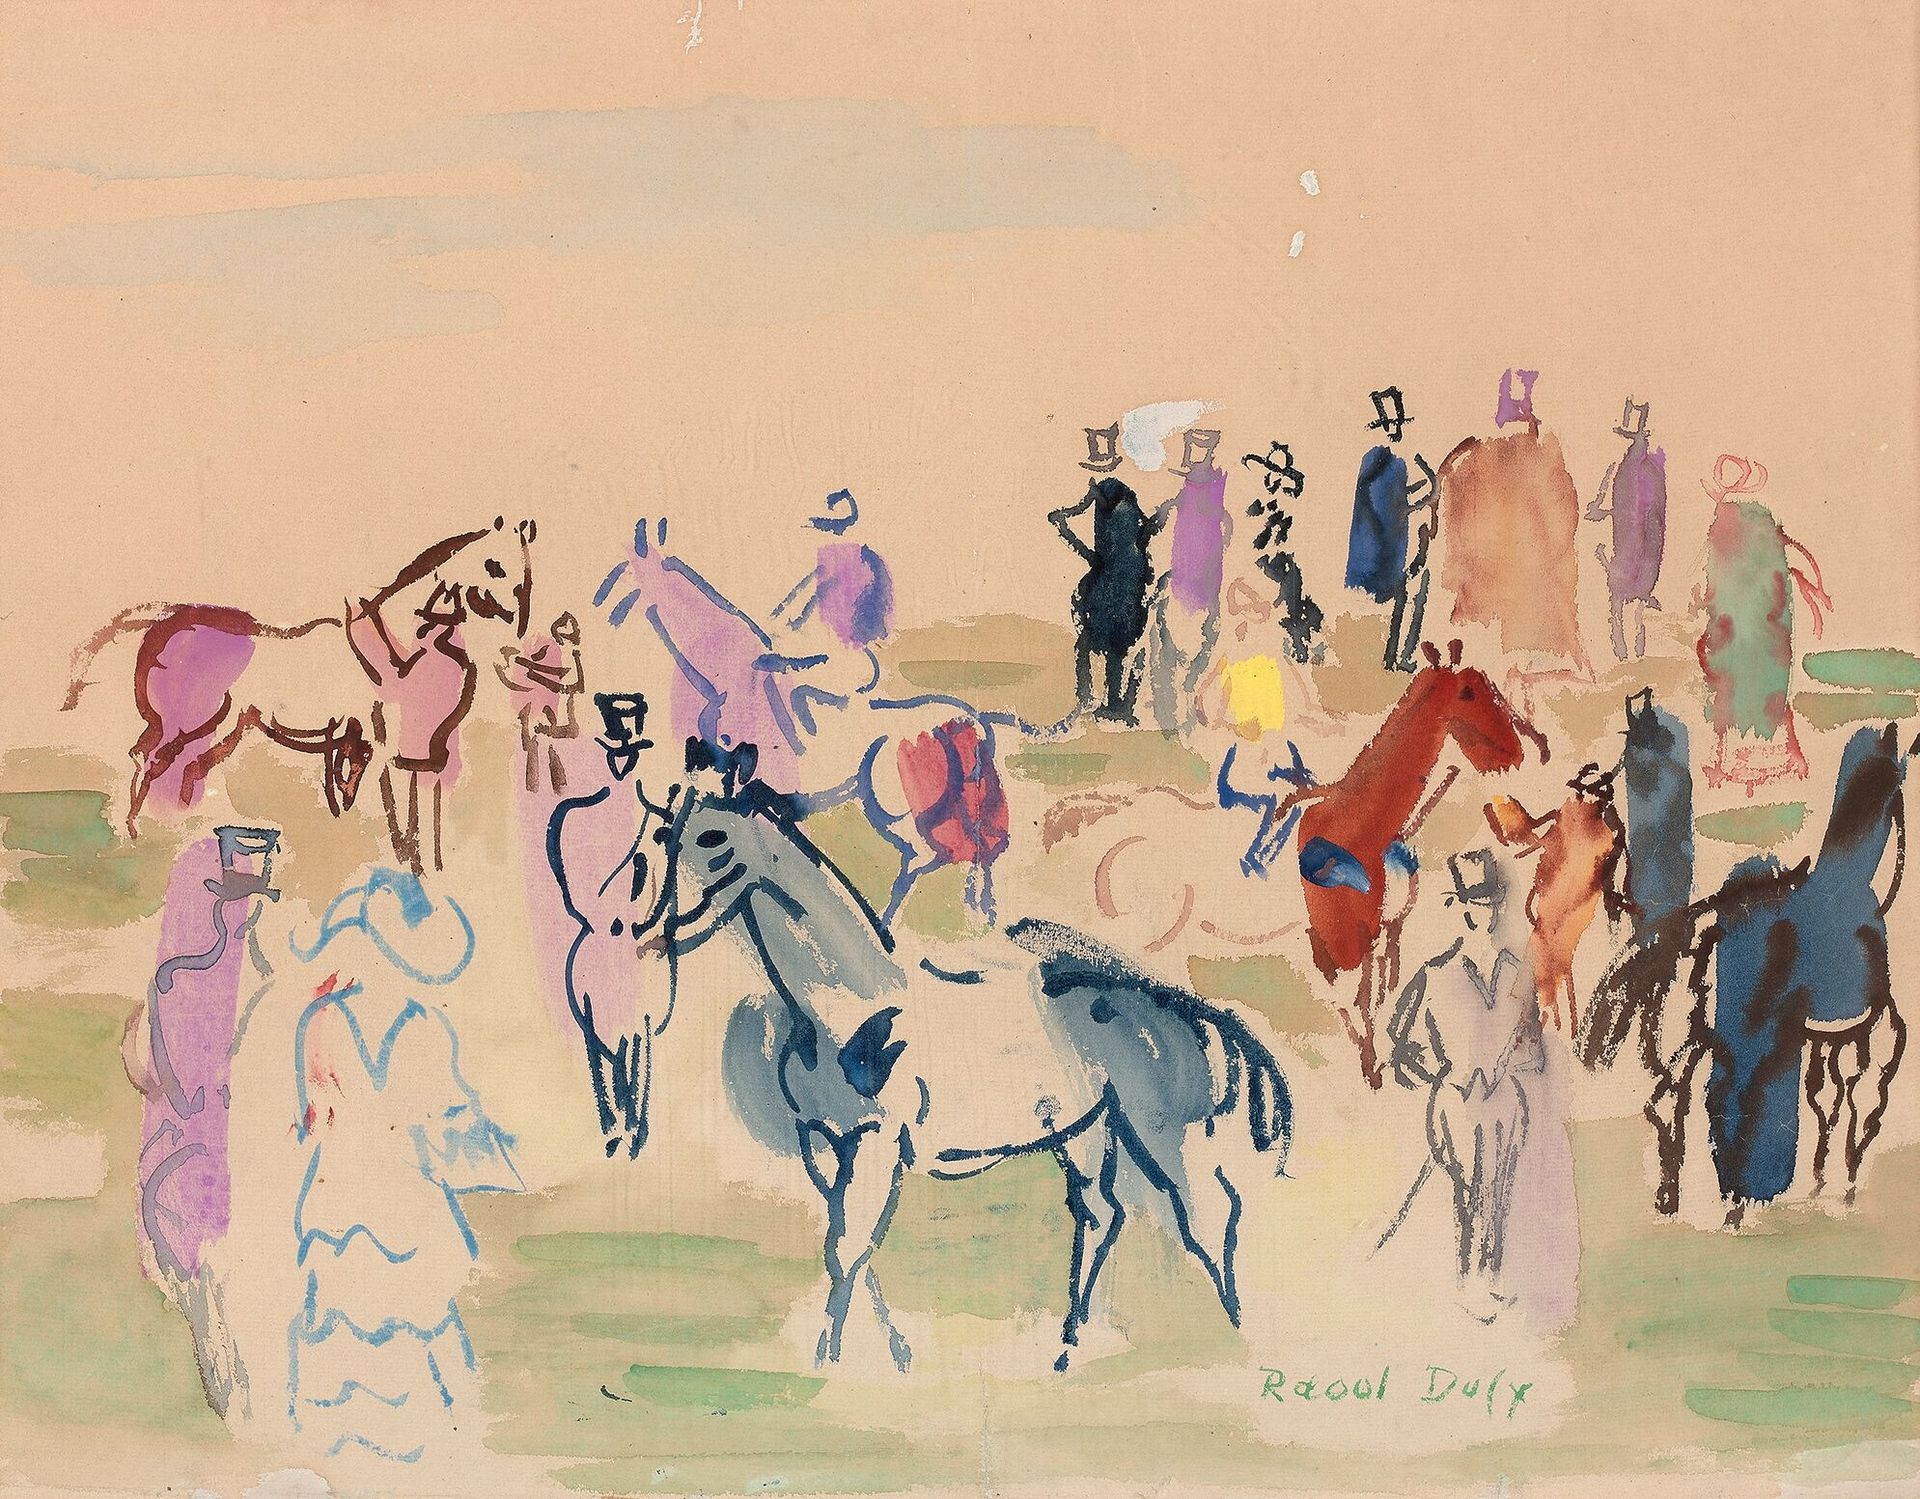 Null 拉乌尔-杜菲 (1877-1953)

在草坪上

水彩水粉画，中下部有签名。

41 x 53 厘米

出处 :

- 阿利-汗王子殿下的前收藏。
&hellip;